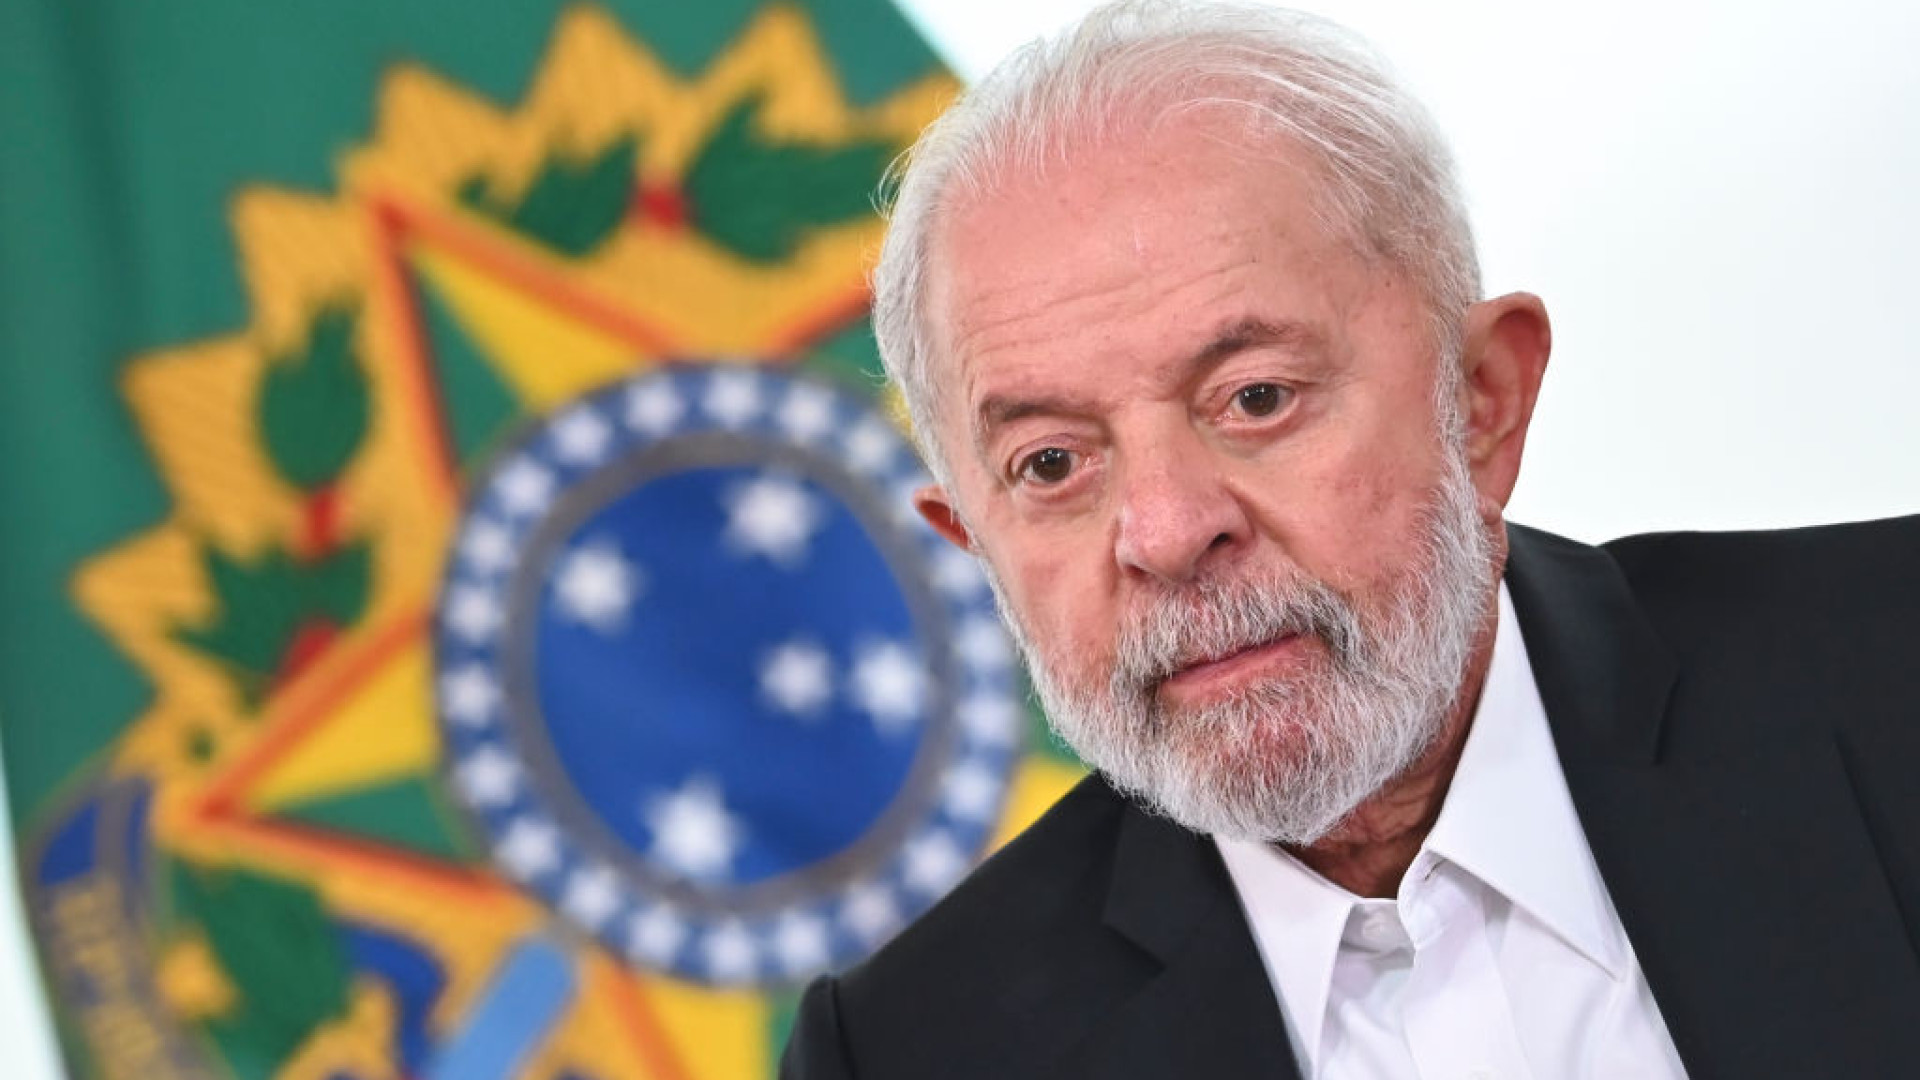 Lula é multado em R$ 250 mil pelo TSE por impulsionar vídeo contra Bolsonaro